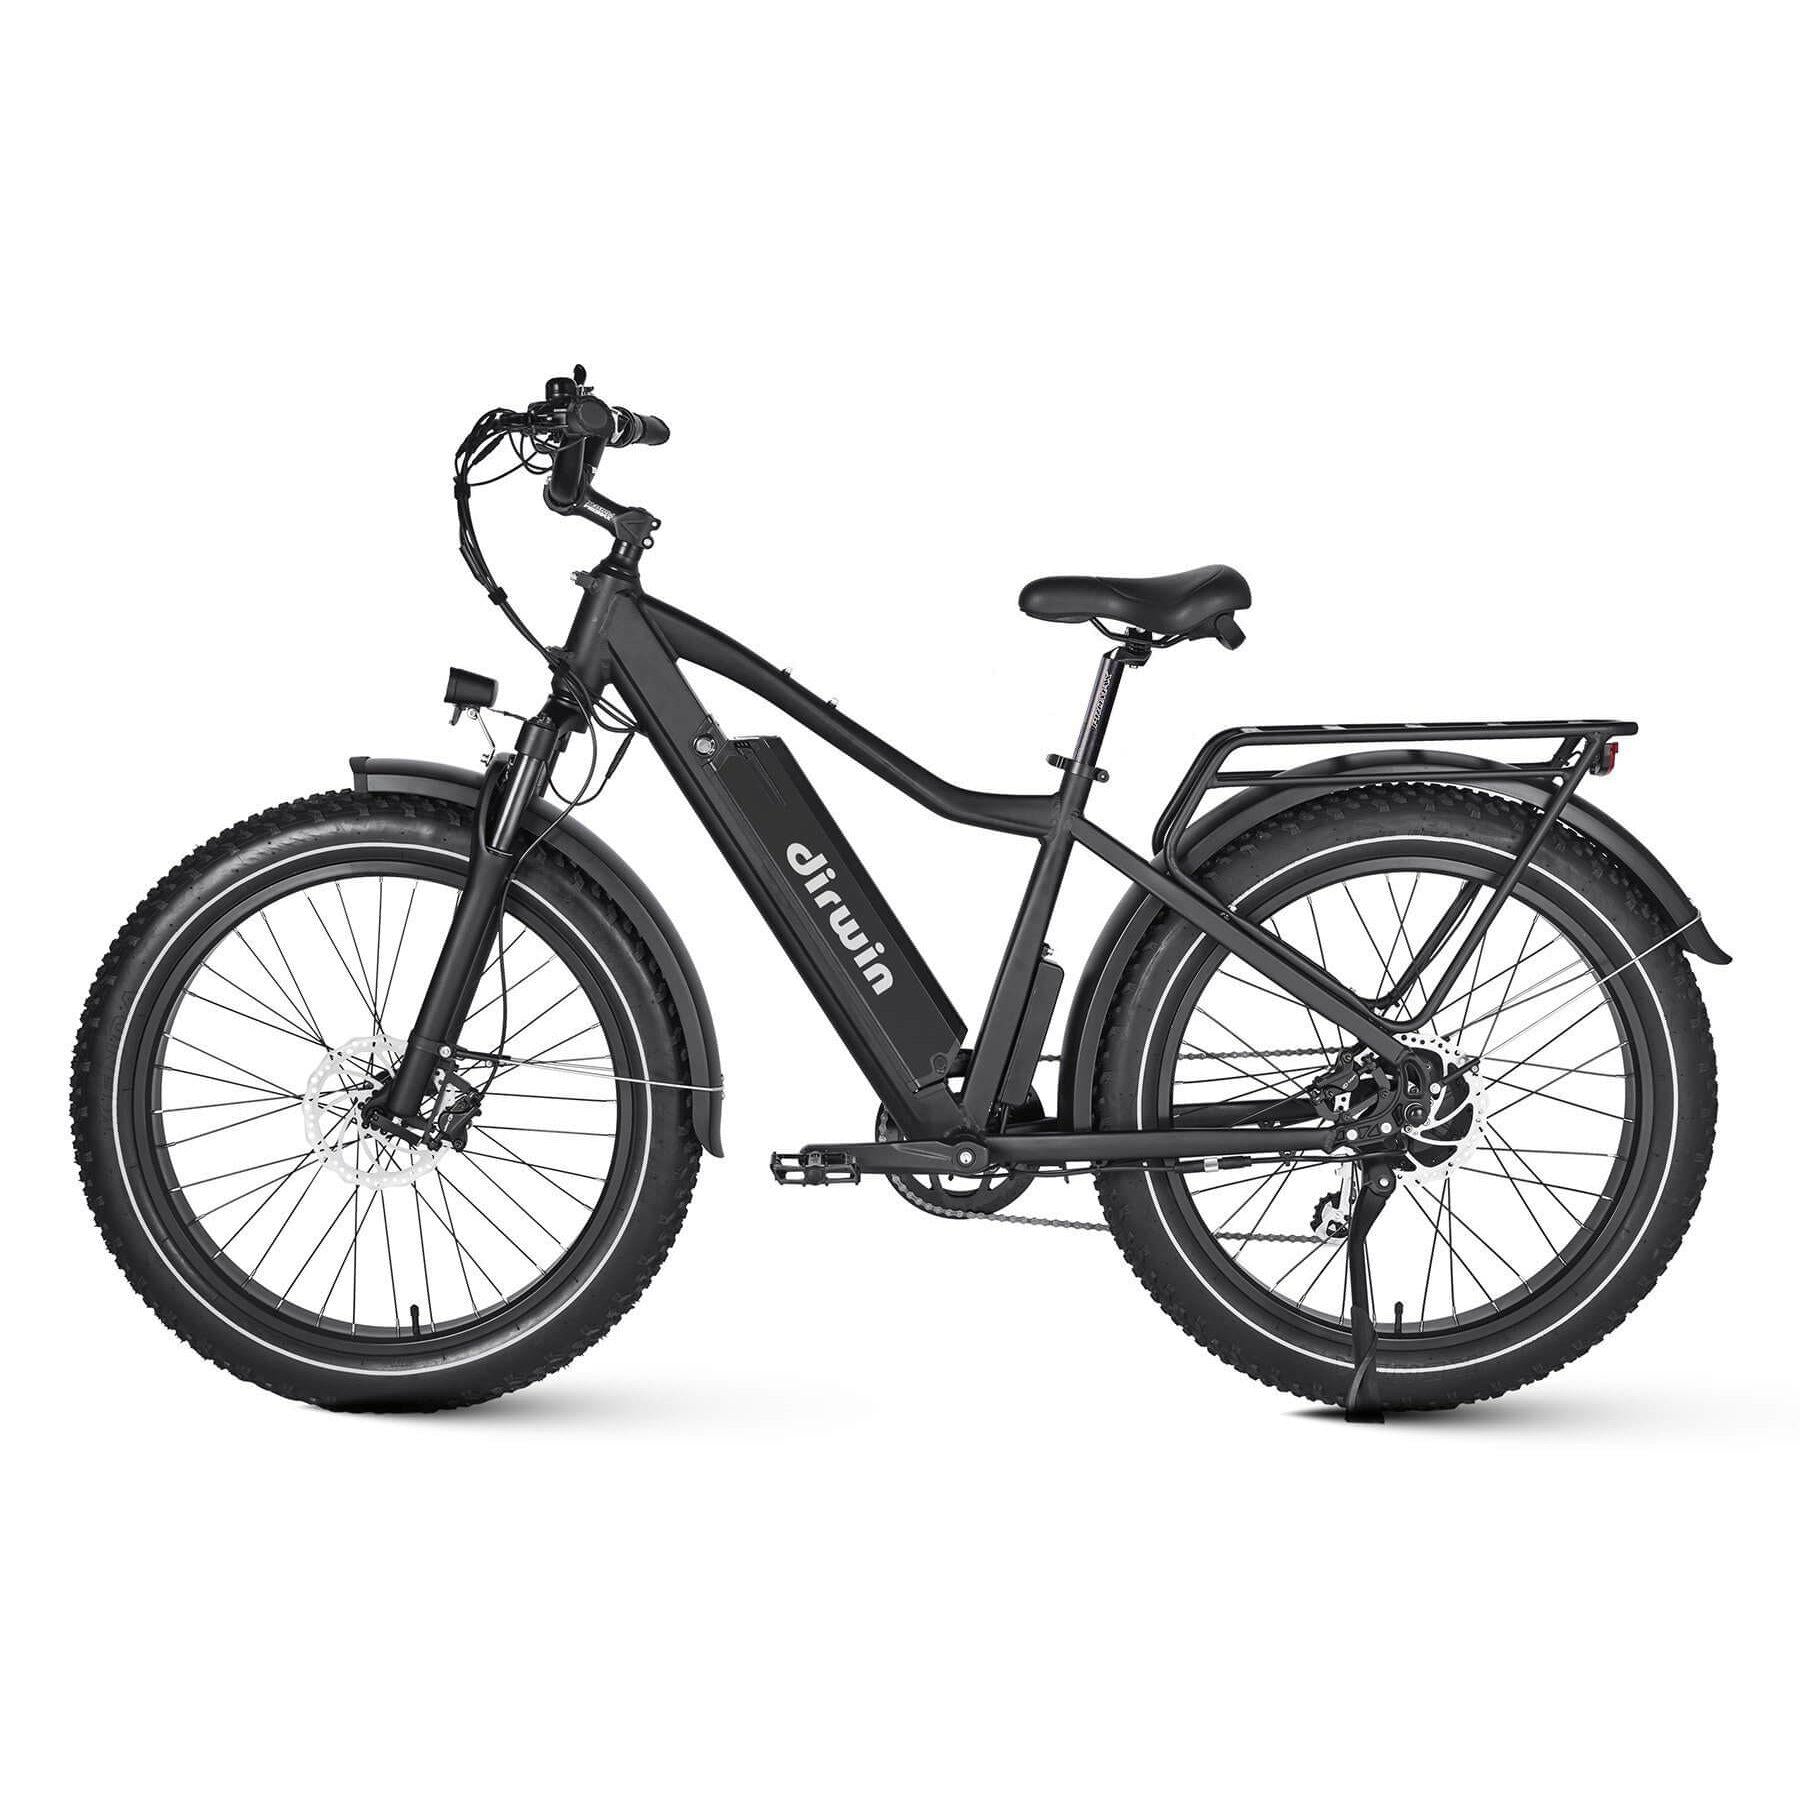 Dirwin-Seeker-750W-Fat-Tire-Electric-Bike-w-Twist-Throttle-fat-Dirwin-Bike